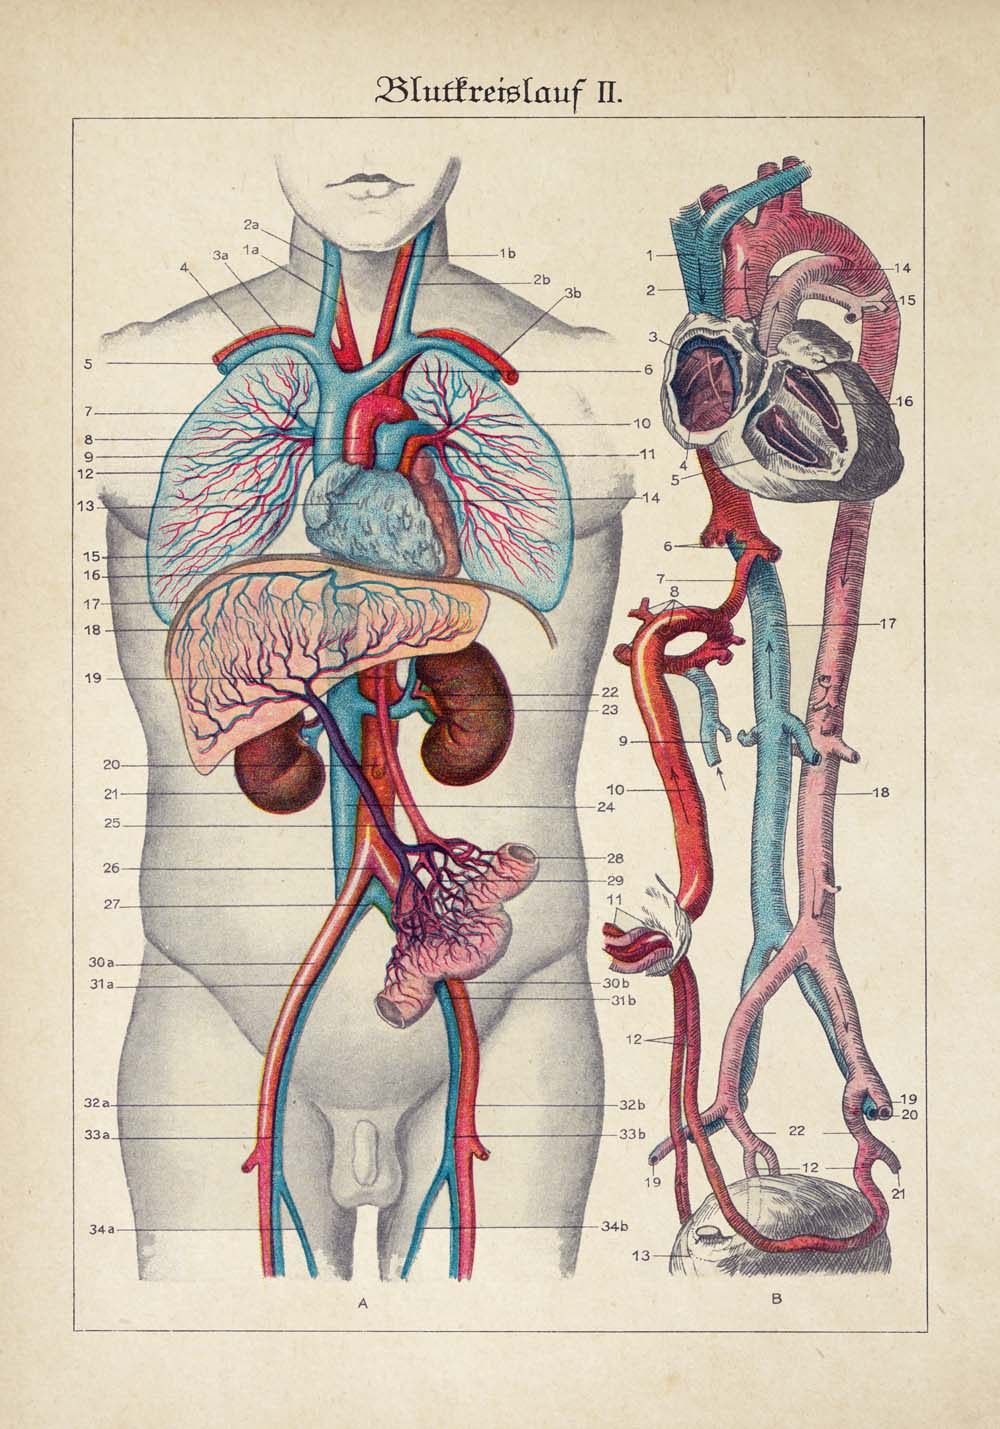 Vintage Anatomy Posters "EYE FULL" Set of 3 Posters